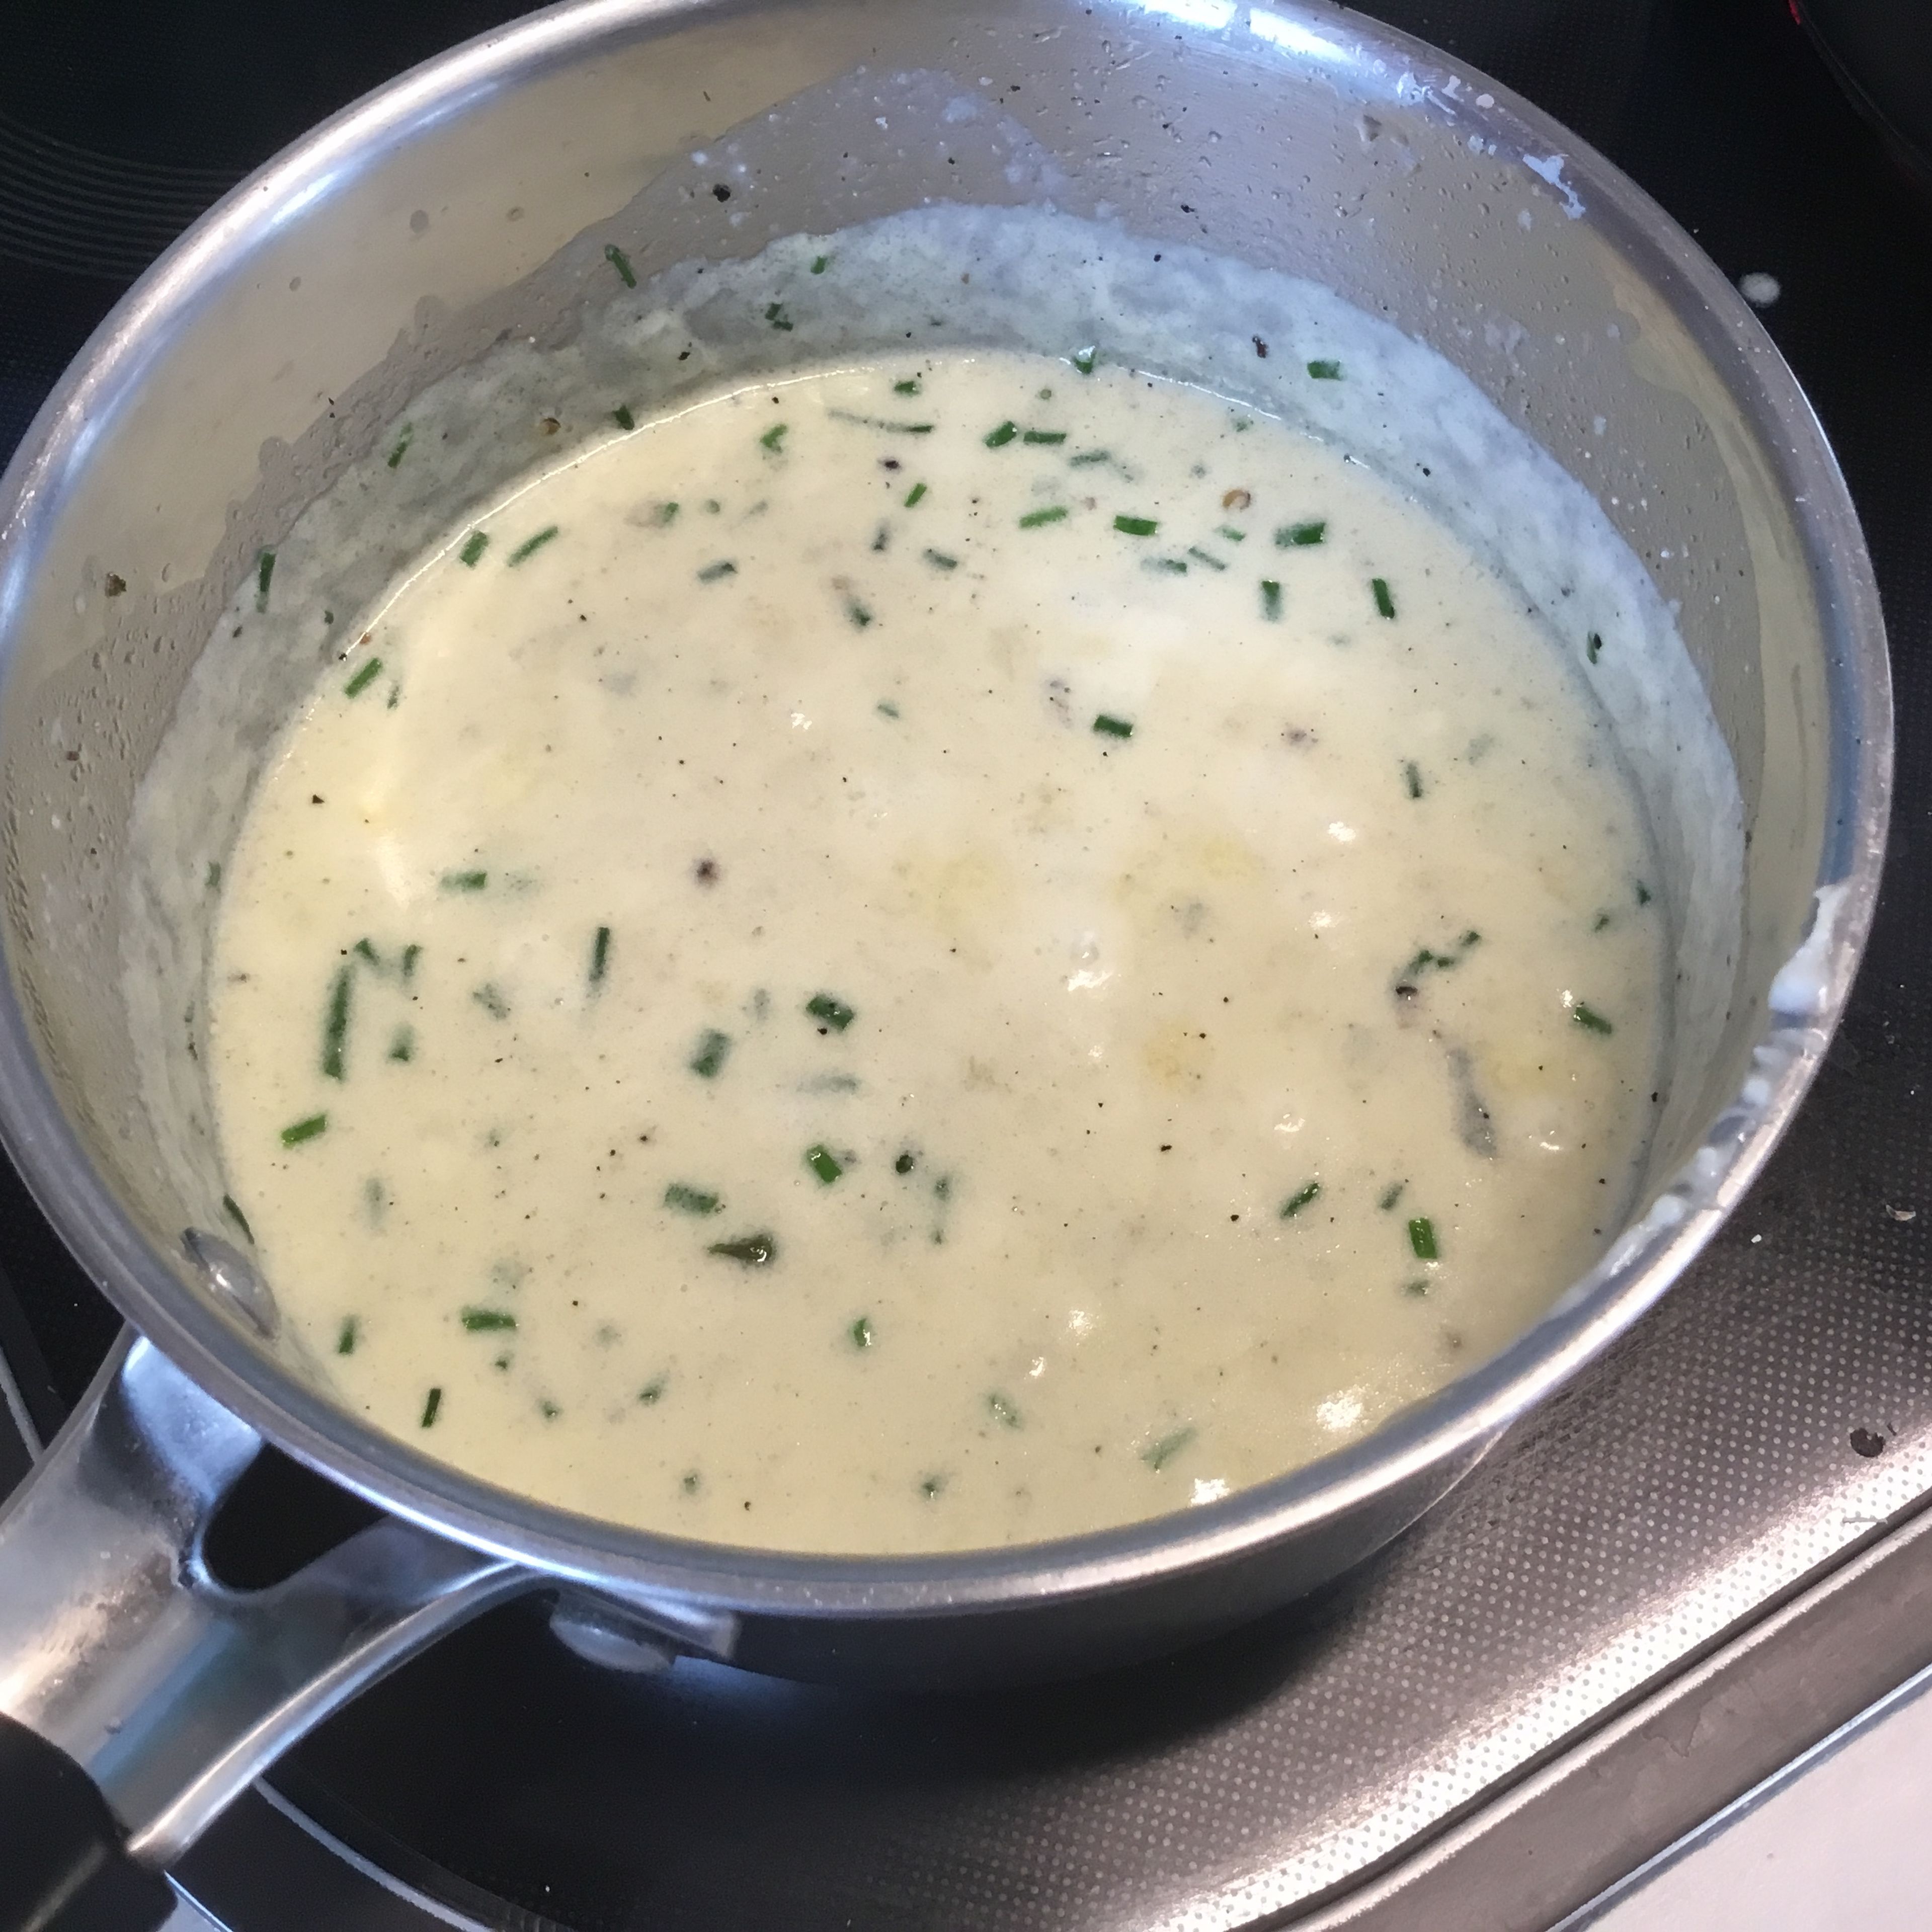 Die fein geschnittene Knoblauchzehe und die 1/4 feine Zwiebel in etwas Butter anschmelzen. Nicht braun werden lassen. Dann entweder mit 200ml Sahne oder wer es nicht so kalorienreich mag mit 1/3 bis 1/2 der Menge Milch (1,5%) und dem Rest von 200 ml Sahne sanft aufwärmen. Danach den zerbröckelten Gorgonzola langsam in der Sahne/Milch auflösen. Je nach Konsistenz etwas Sahne oder Milch hinzufügen, eine Prise geschroteten Pfeffer und etwas geschnittenen Schnittlauch beifügen.